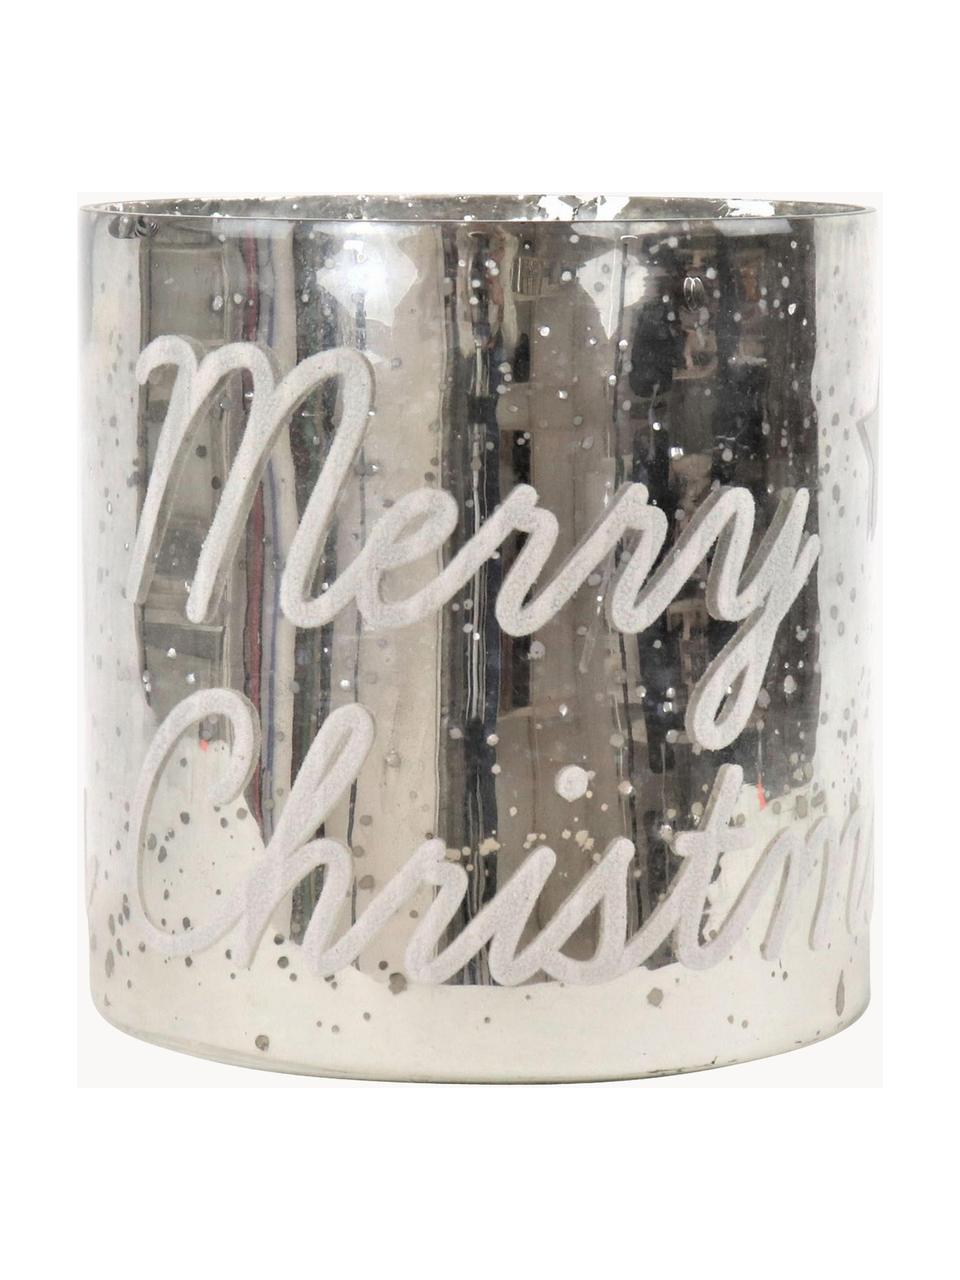 Windlicht Merry Christmas , Glas, Zilverkleurig, Ø 20 x H 20 cm